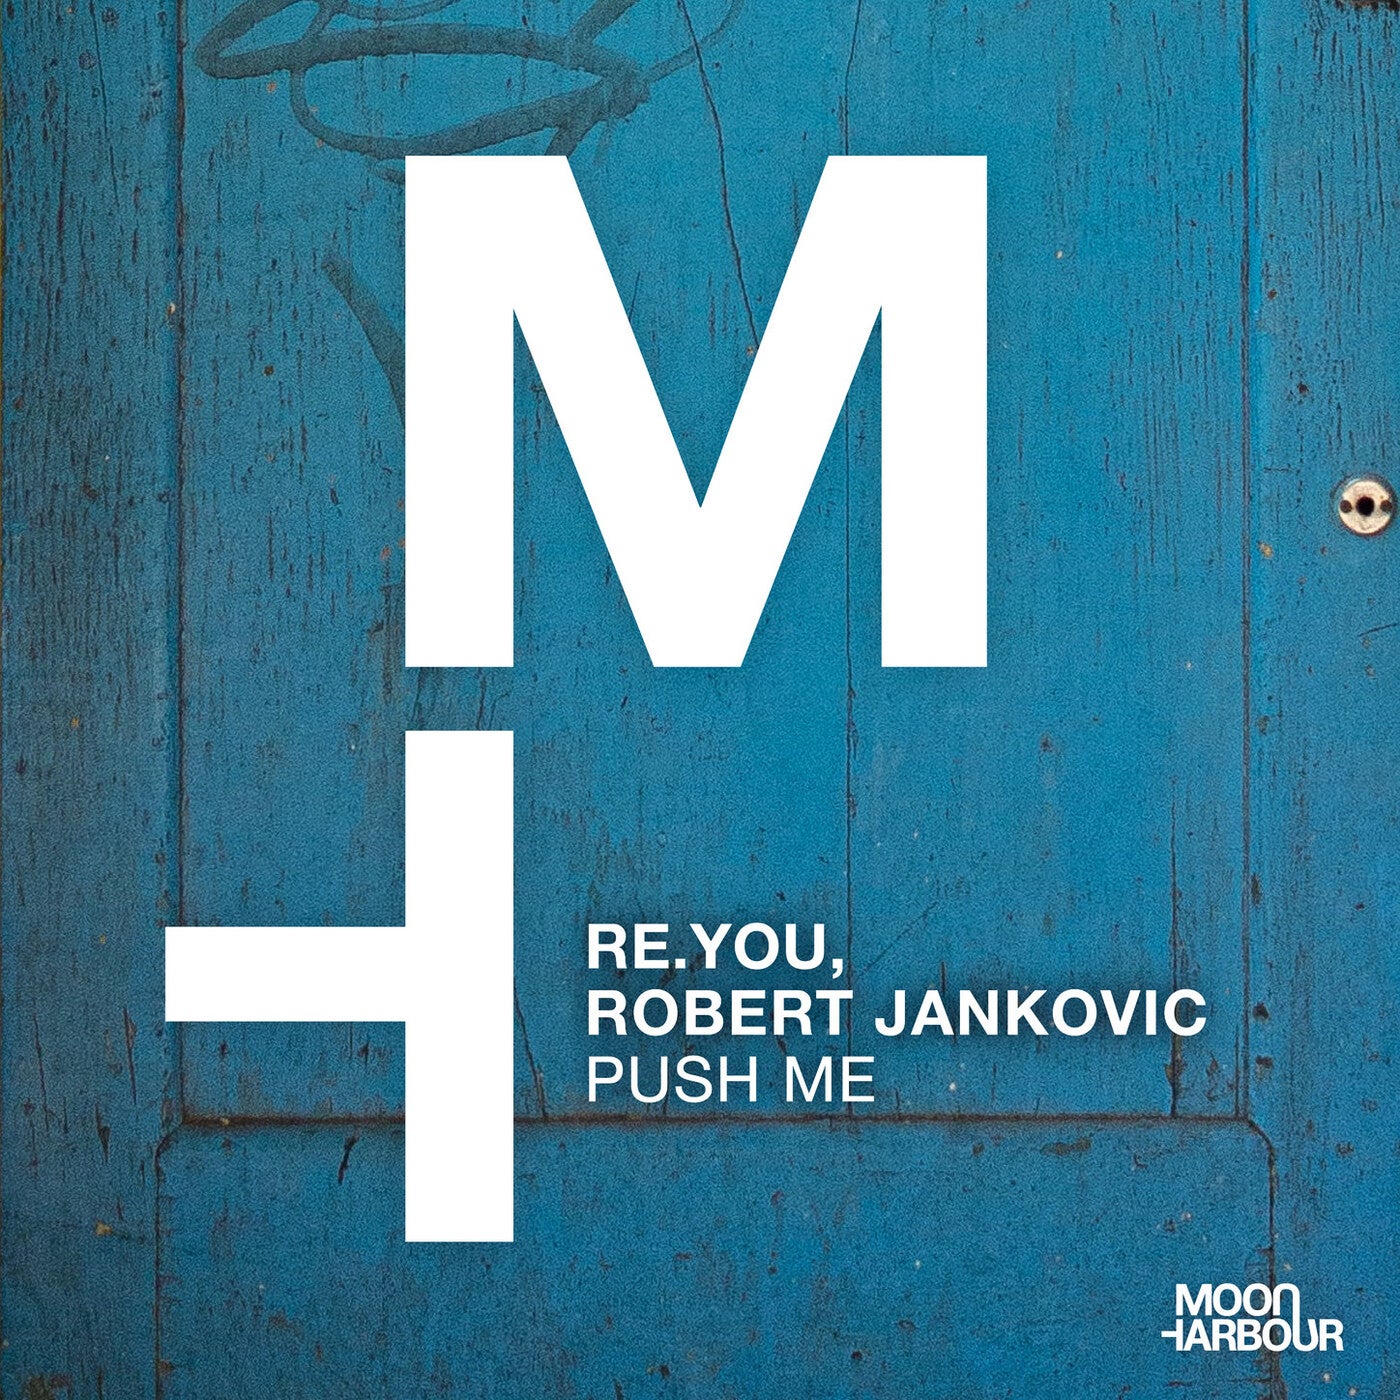 Re.You, Robert Jankovic – Push Me [MHD132]